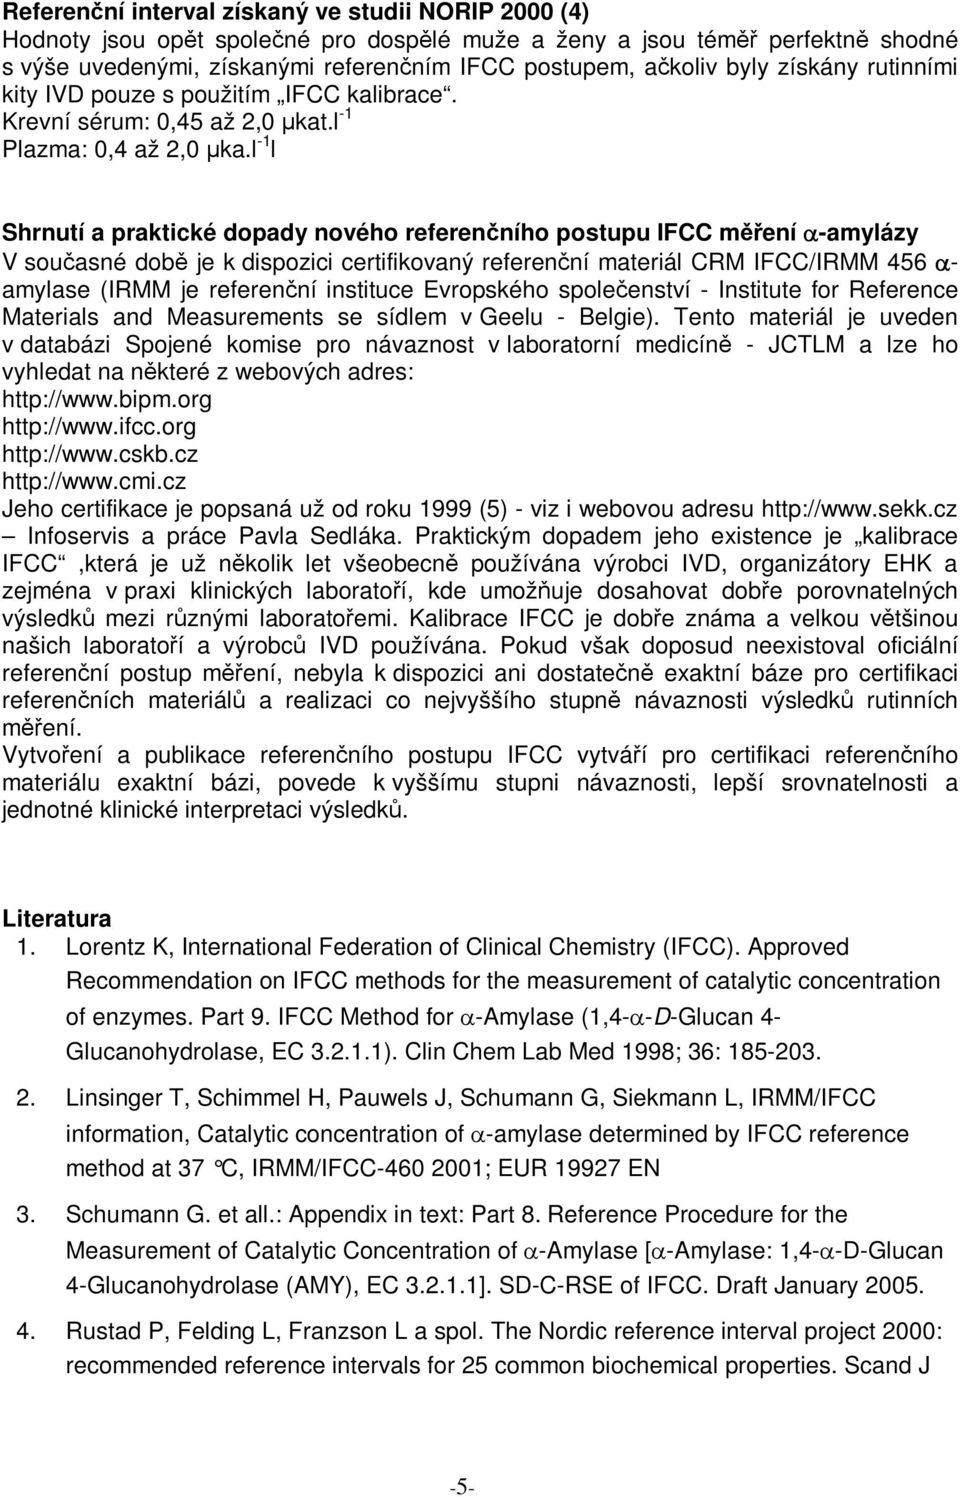 l -1 l Shrnutí a praktické dopady nového referenního postupu IFCC mení -amylázy V souasné dob je k dispozici certifikovaný referenní materiál CRM IFCC/IRMM 456 - amylase (IRMM je referenní instituce